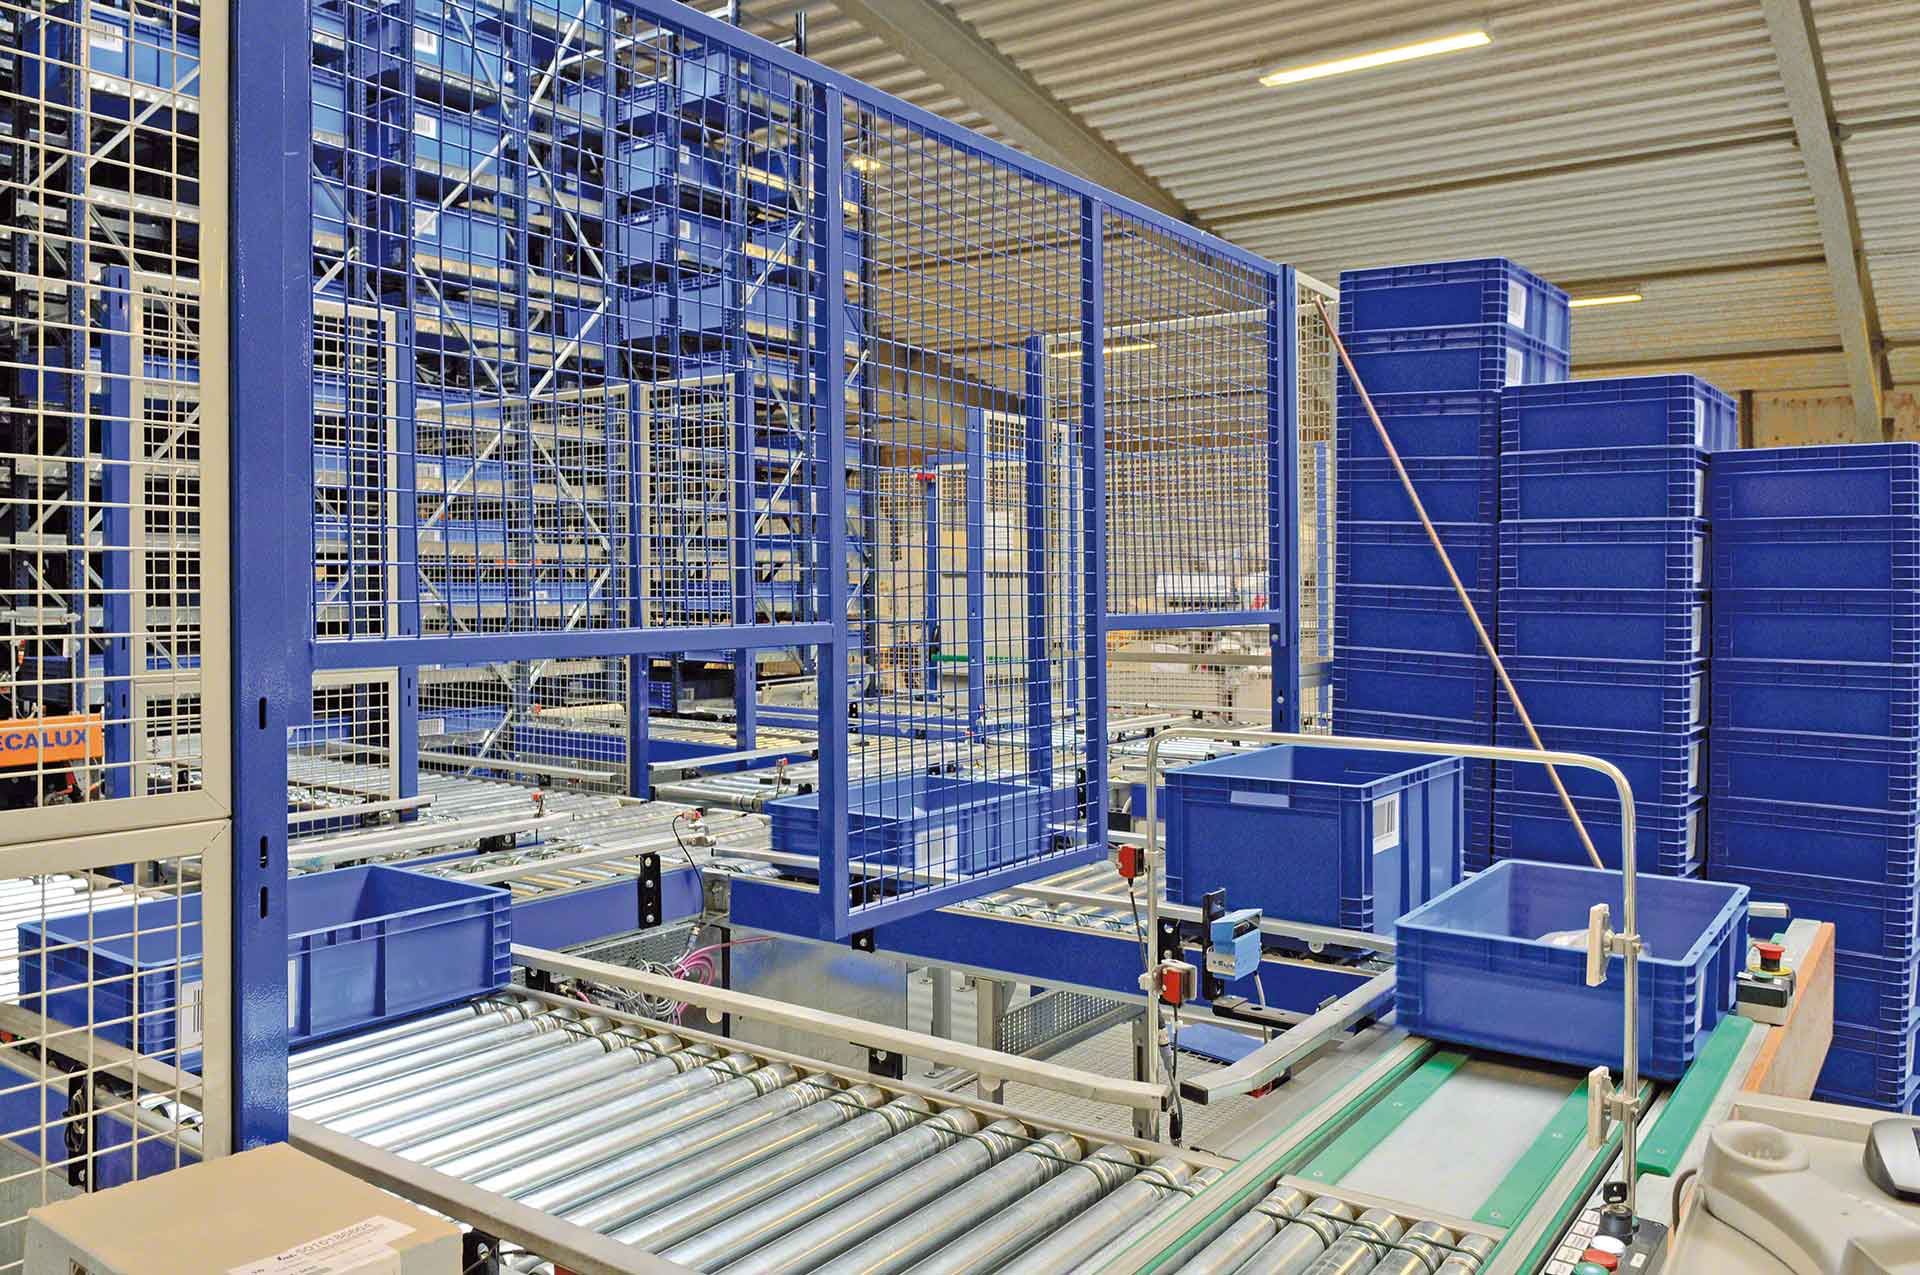 El traslado de mercancías dentro del almacén es un aspecto optimizable con la aplicación de la inteligencia artificial en logística